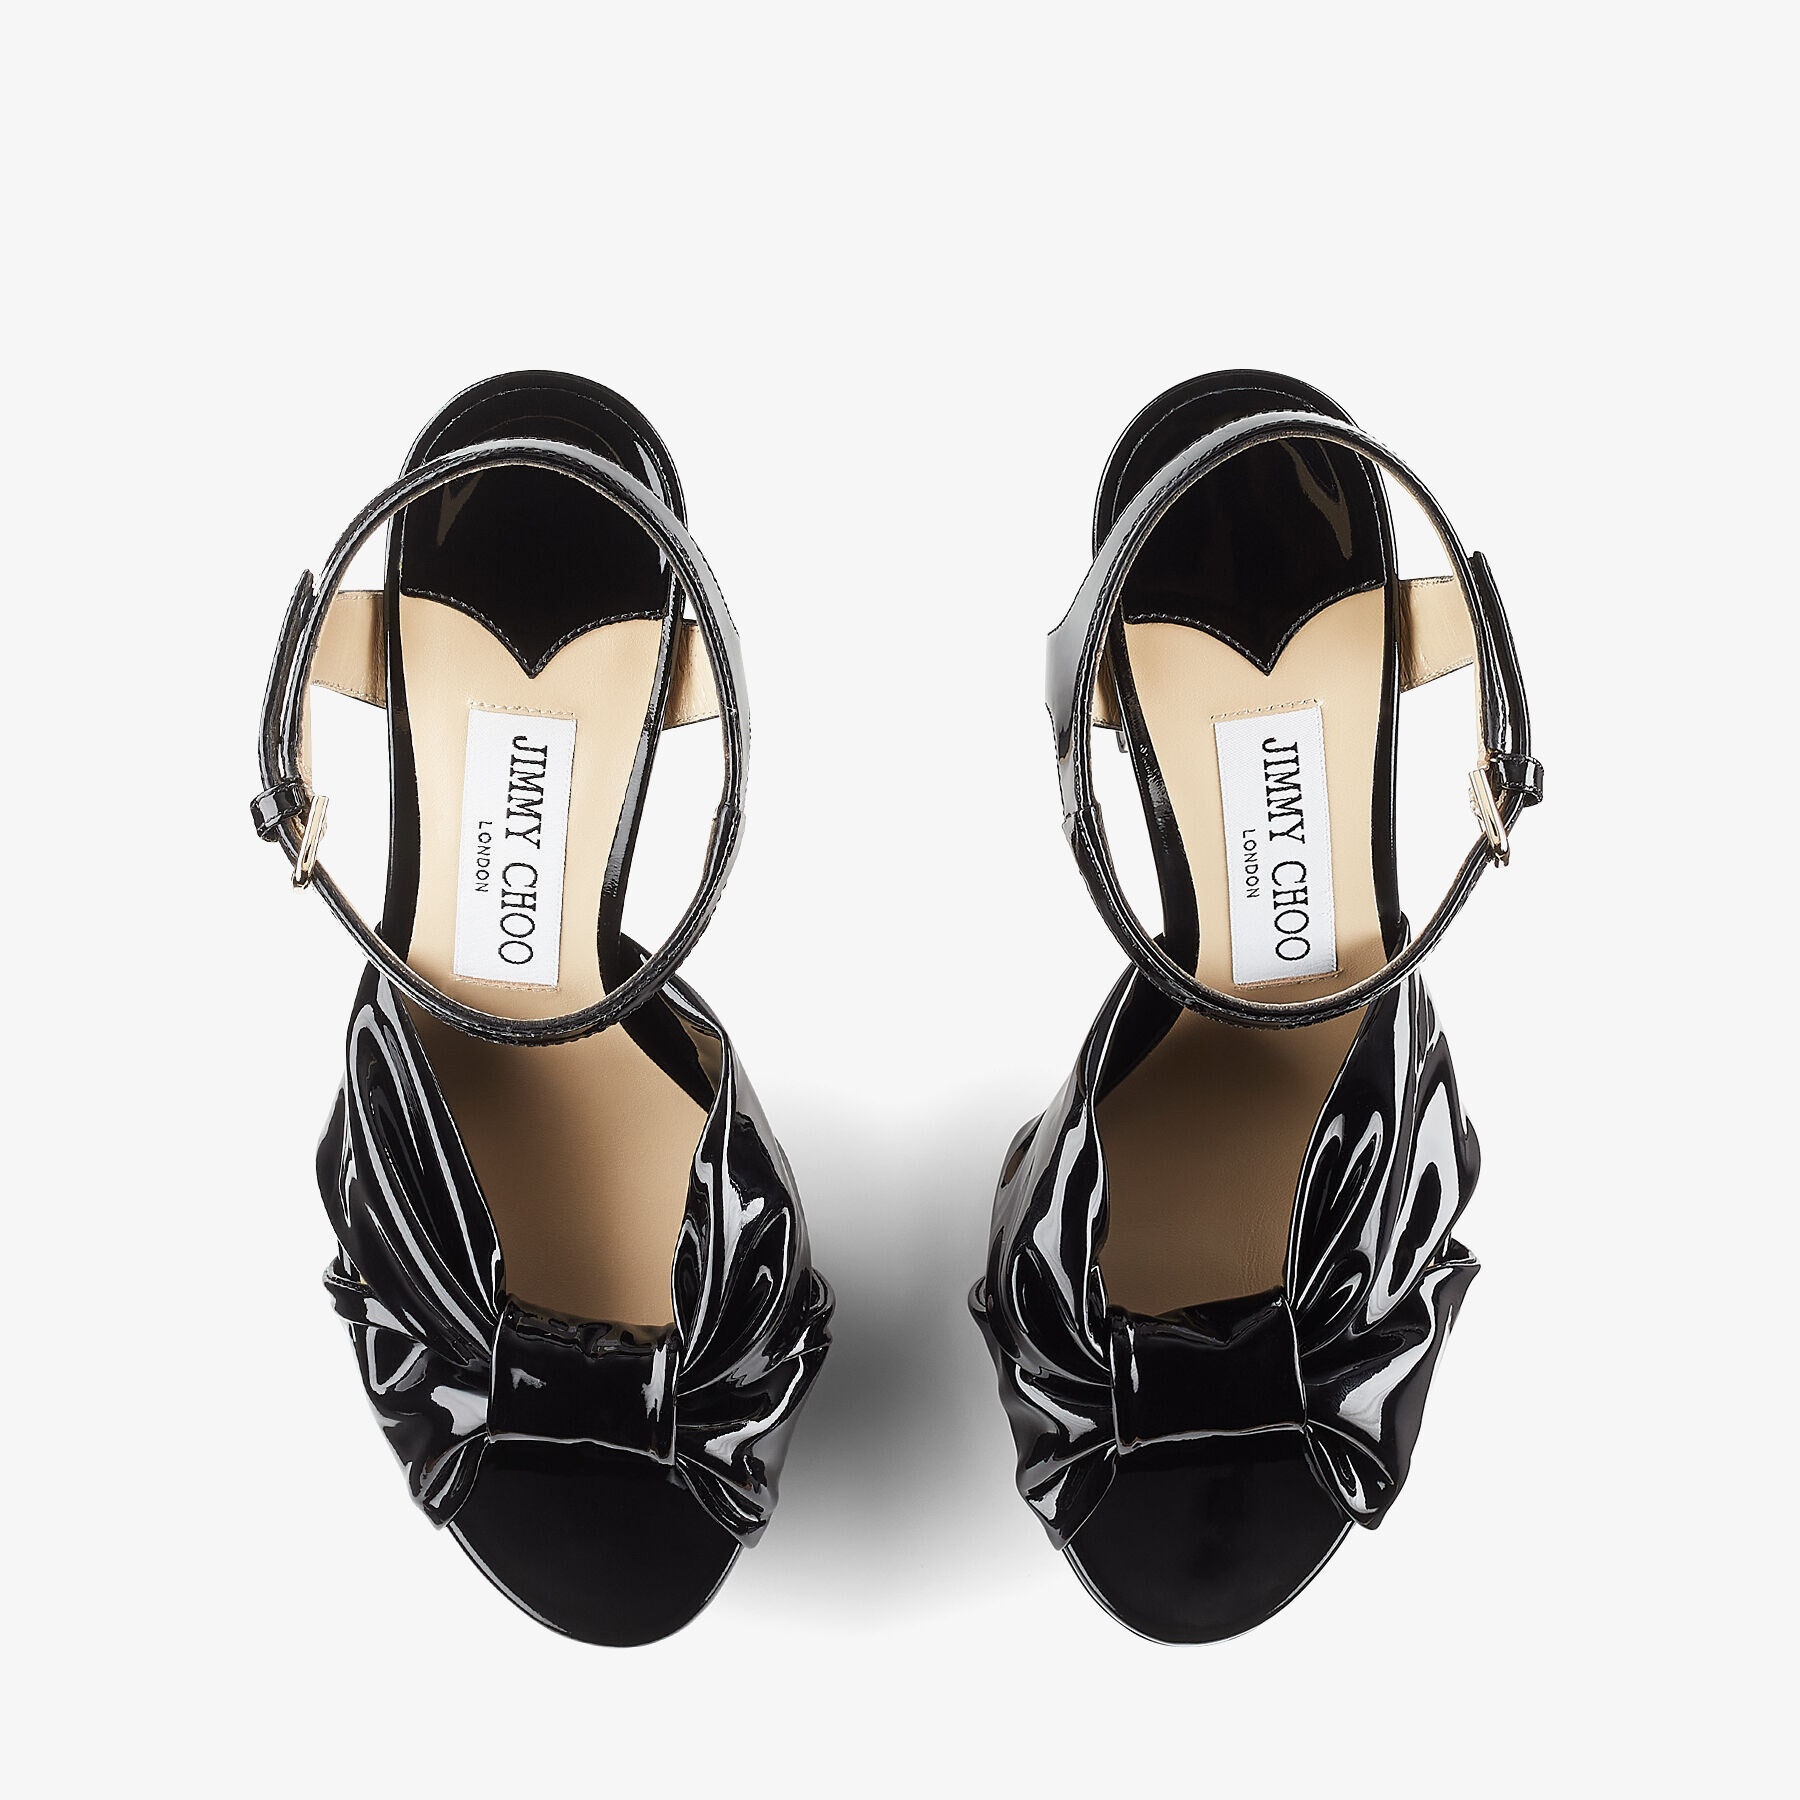 Heloise 120
Black Soft Patent Platform Sandals - 5